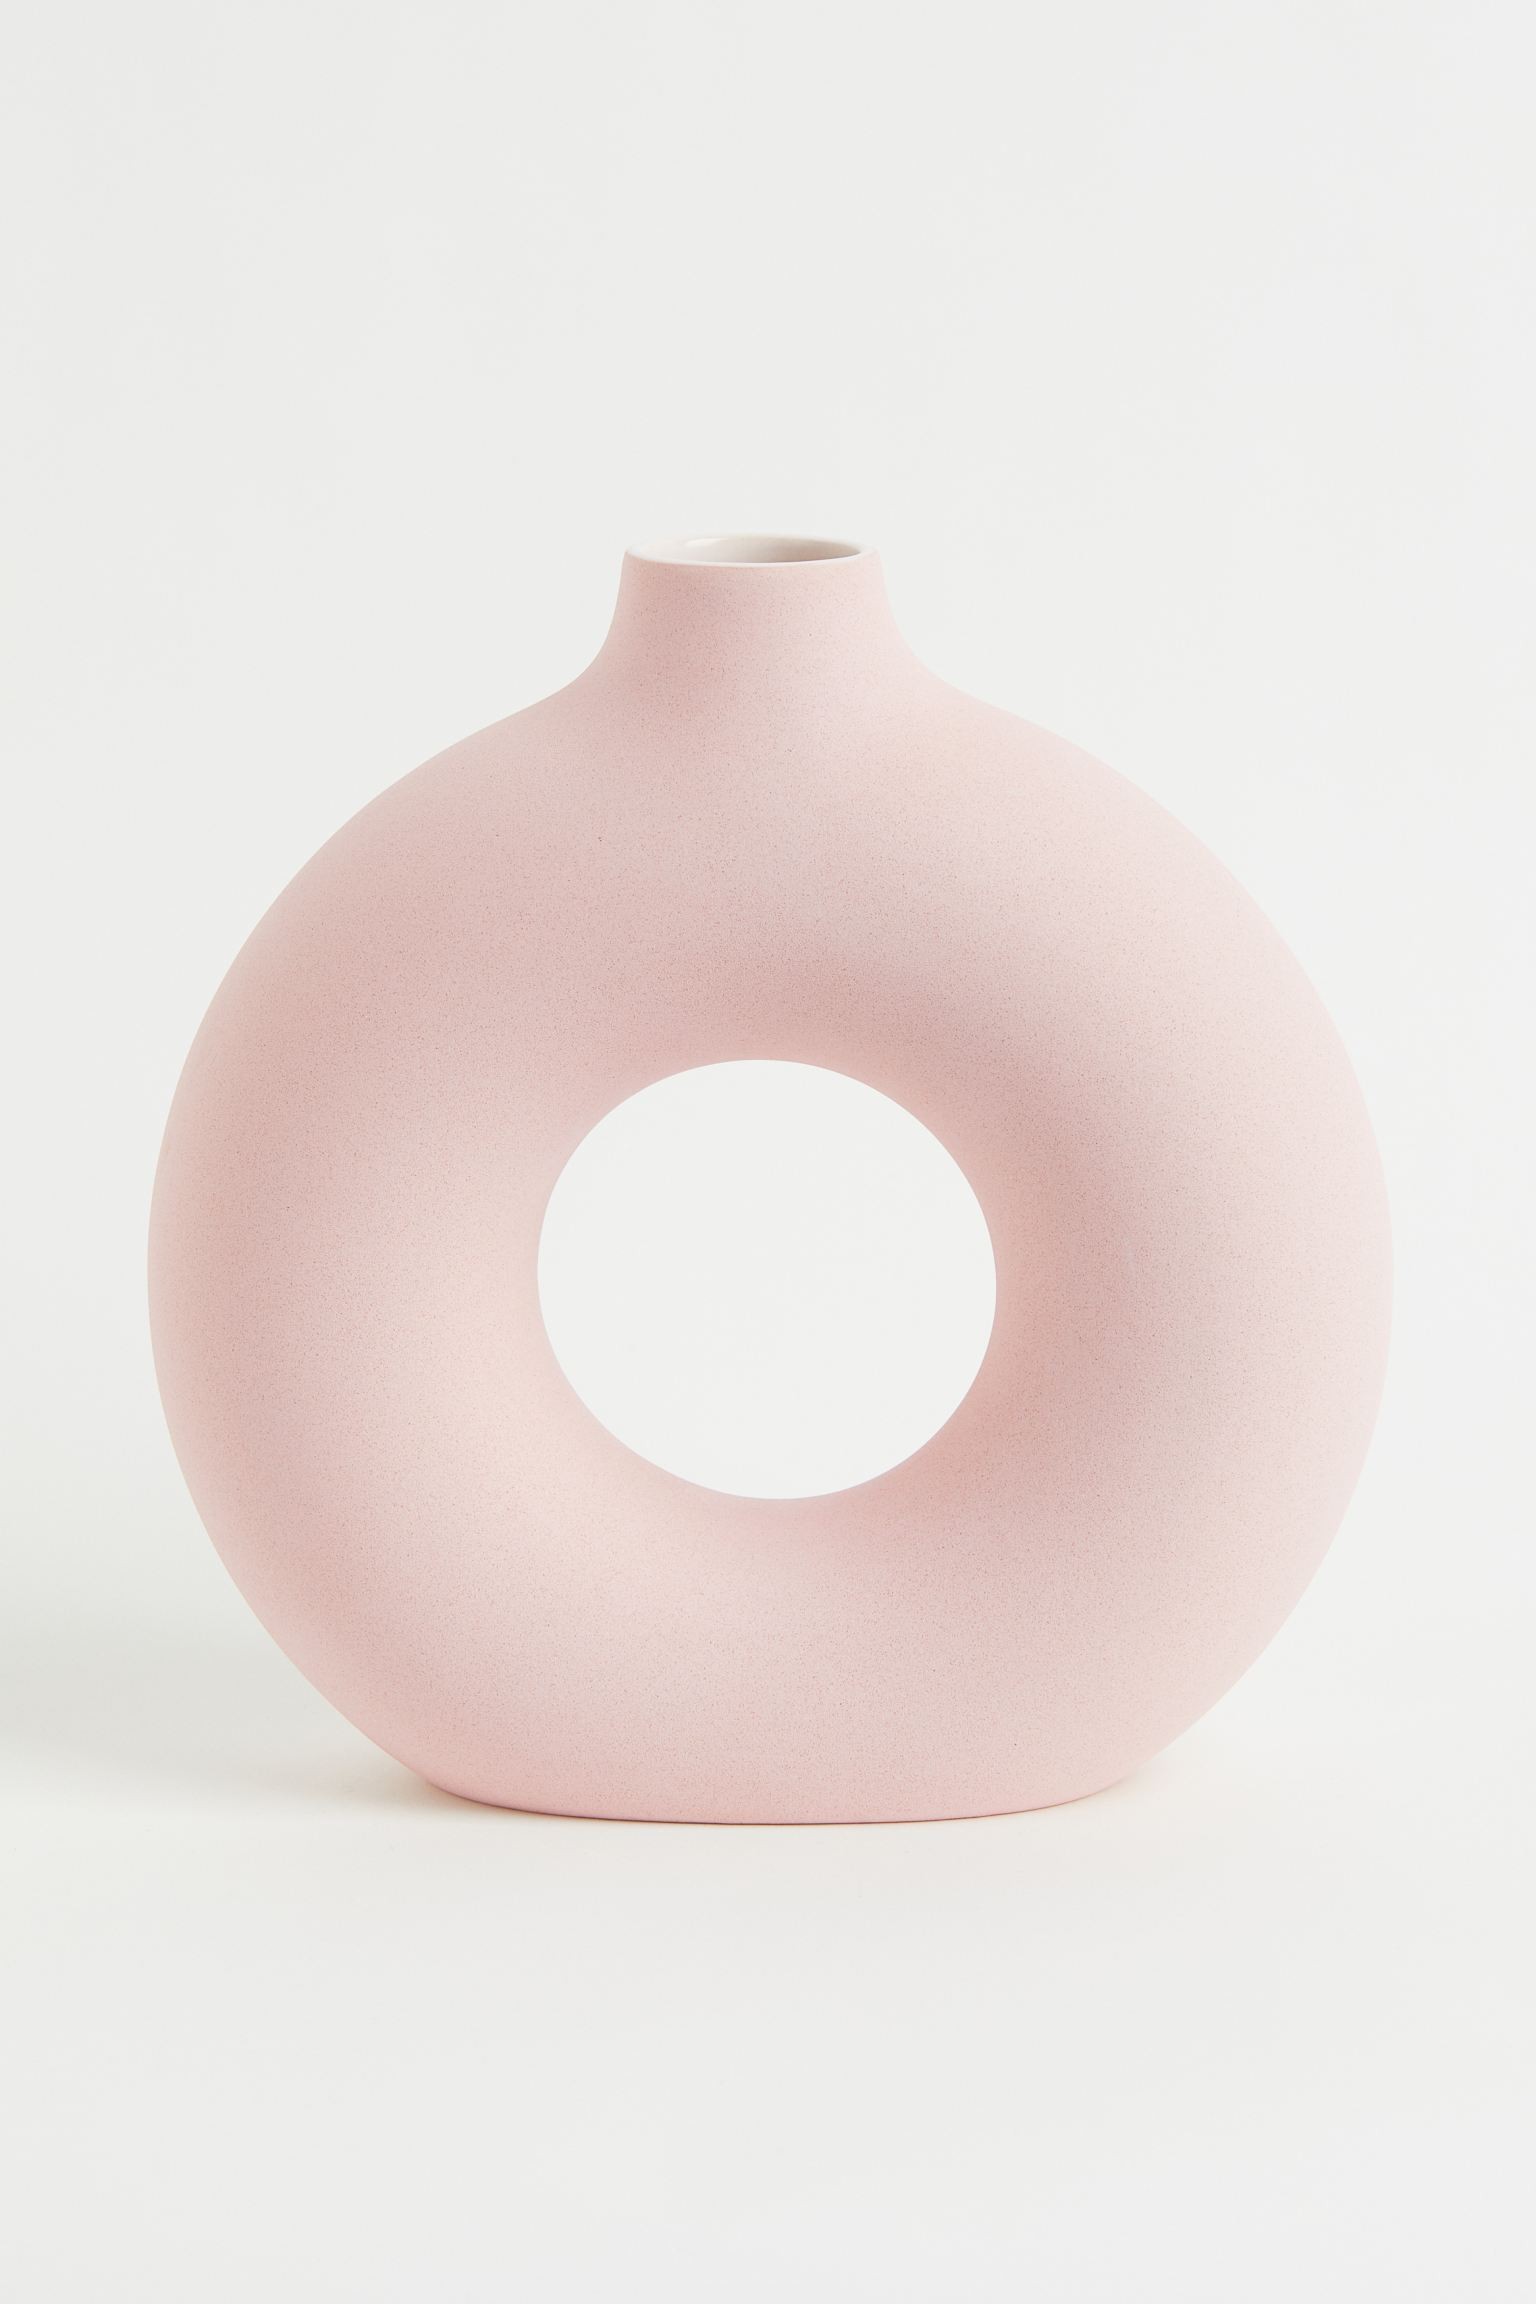 Велика керамічна ваза, античний рожевий